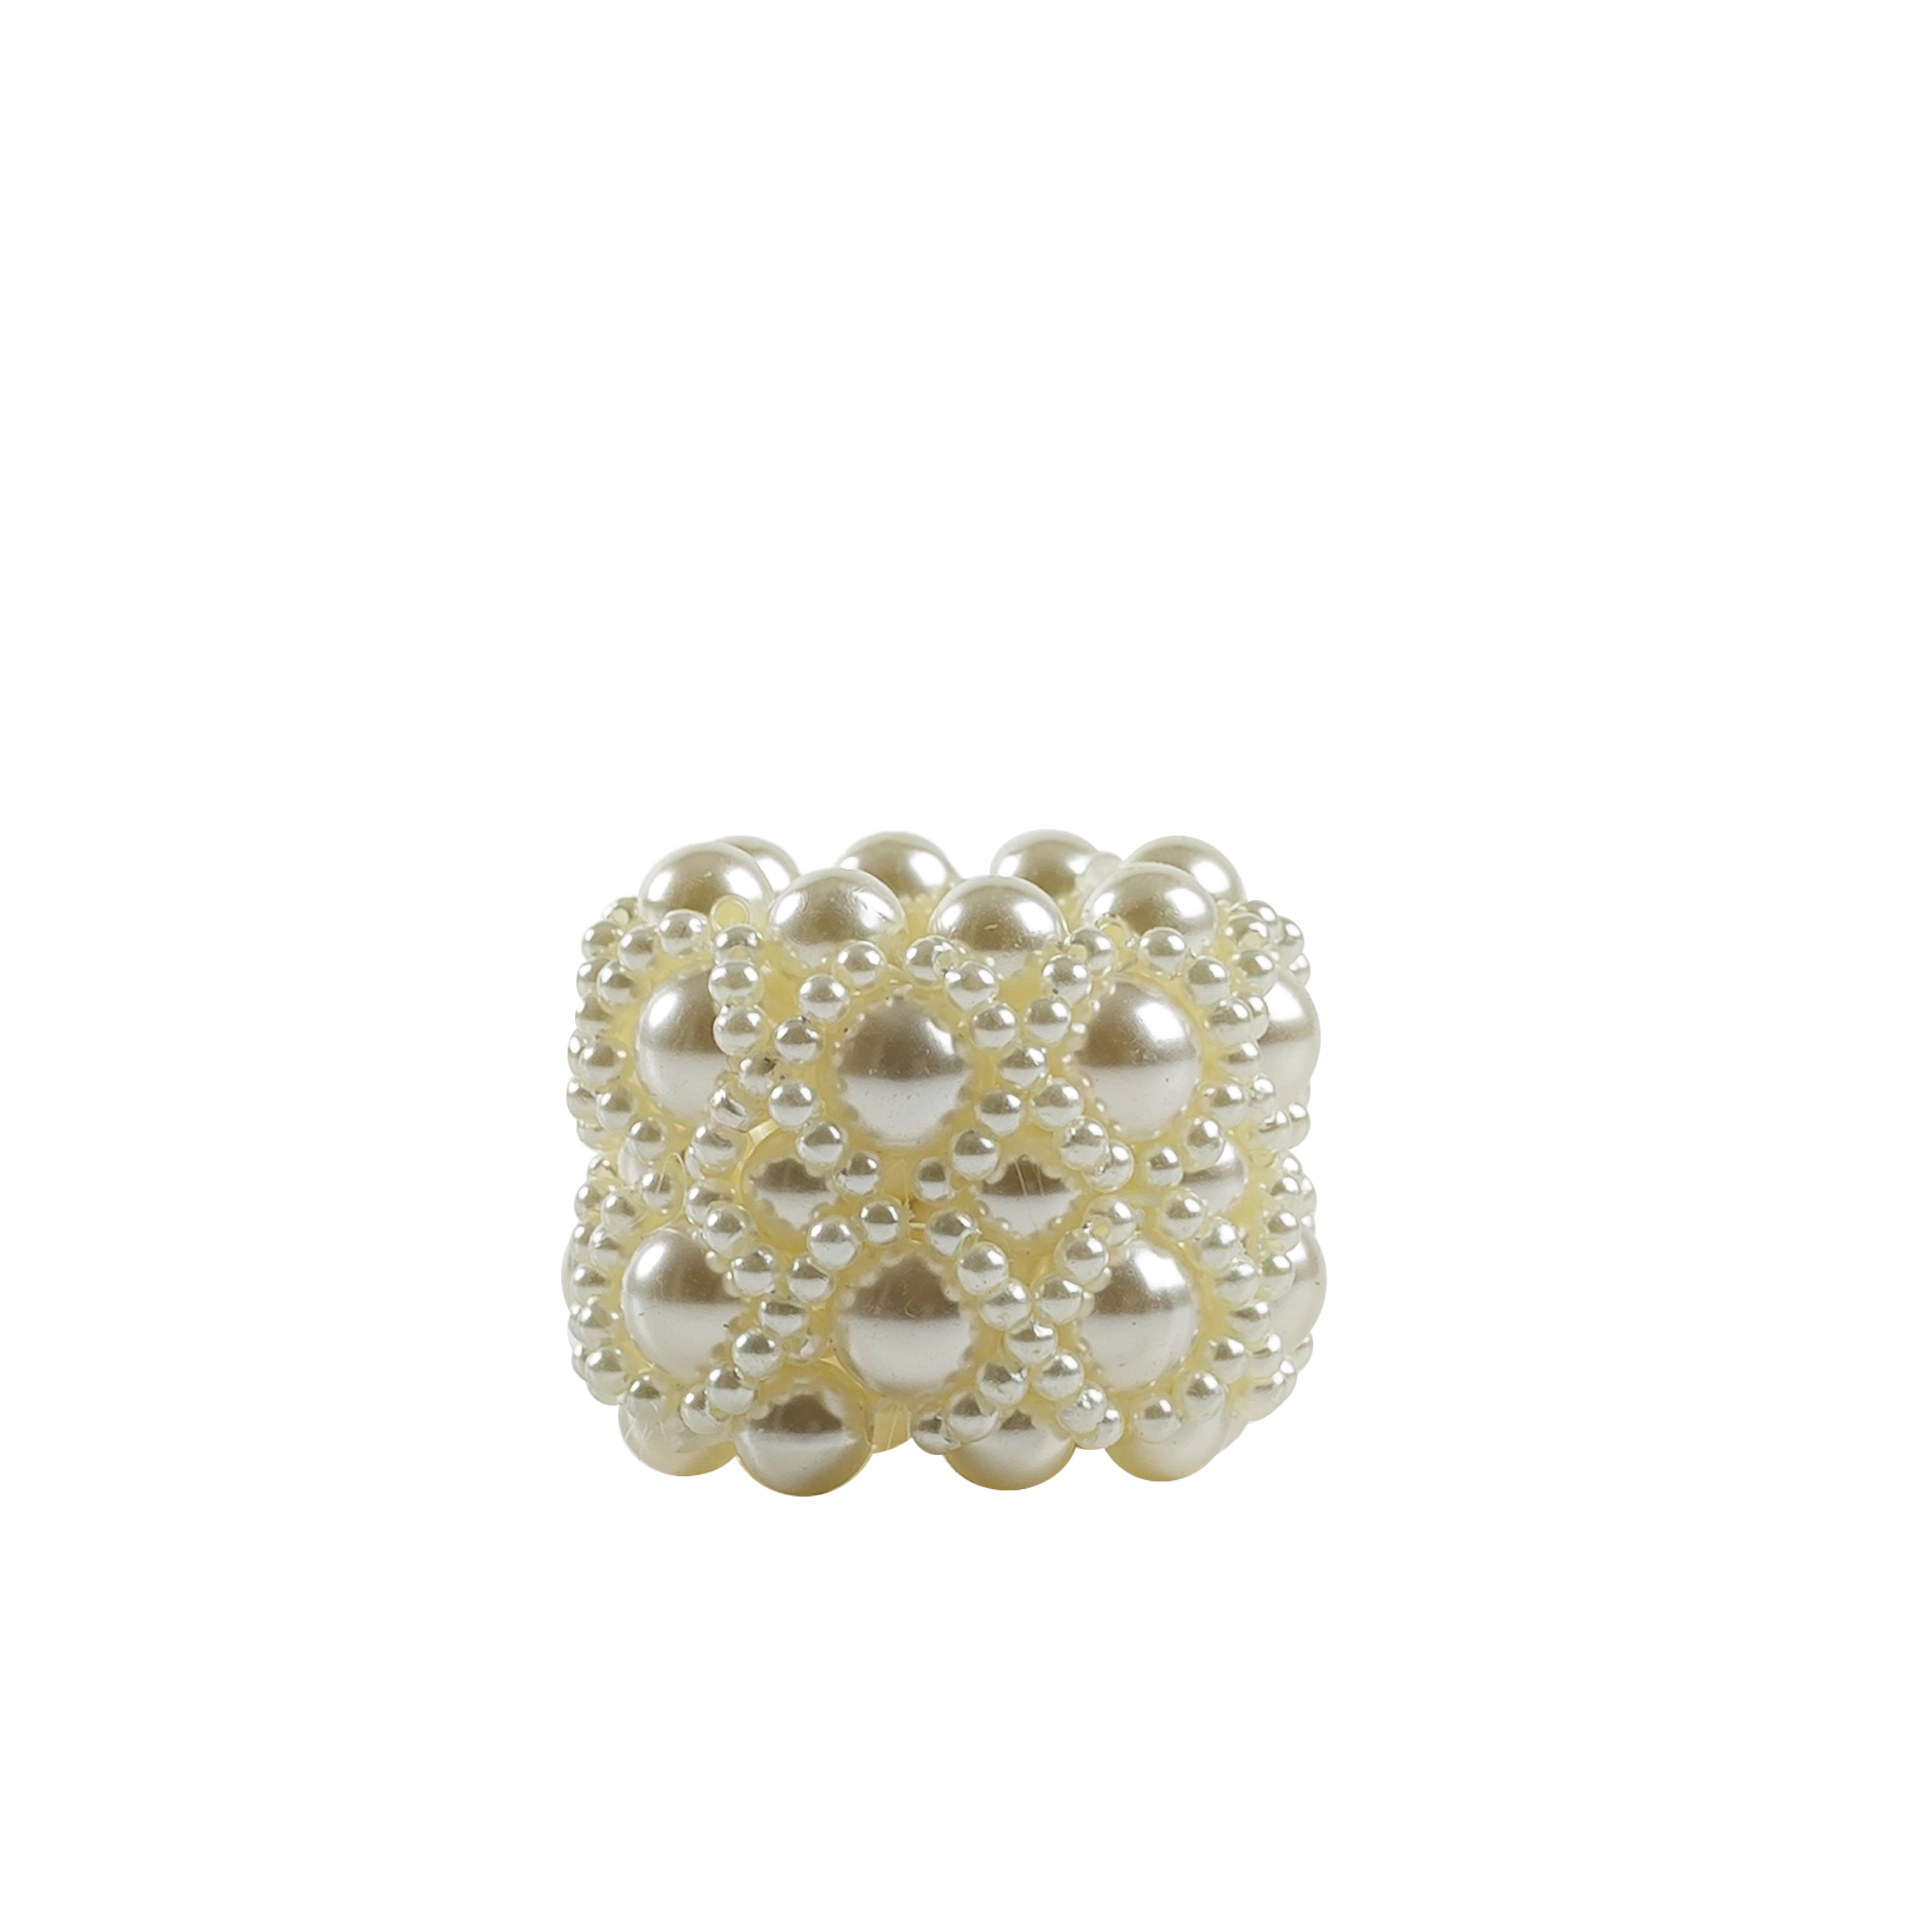 Kerzen- Serviettenmanschette mit Perlen und Gummizug Ø min. 2,2 - max. 6 cm  